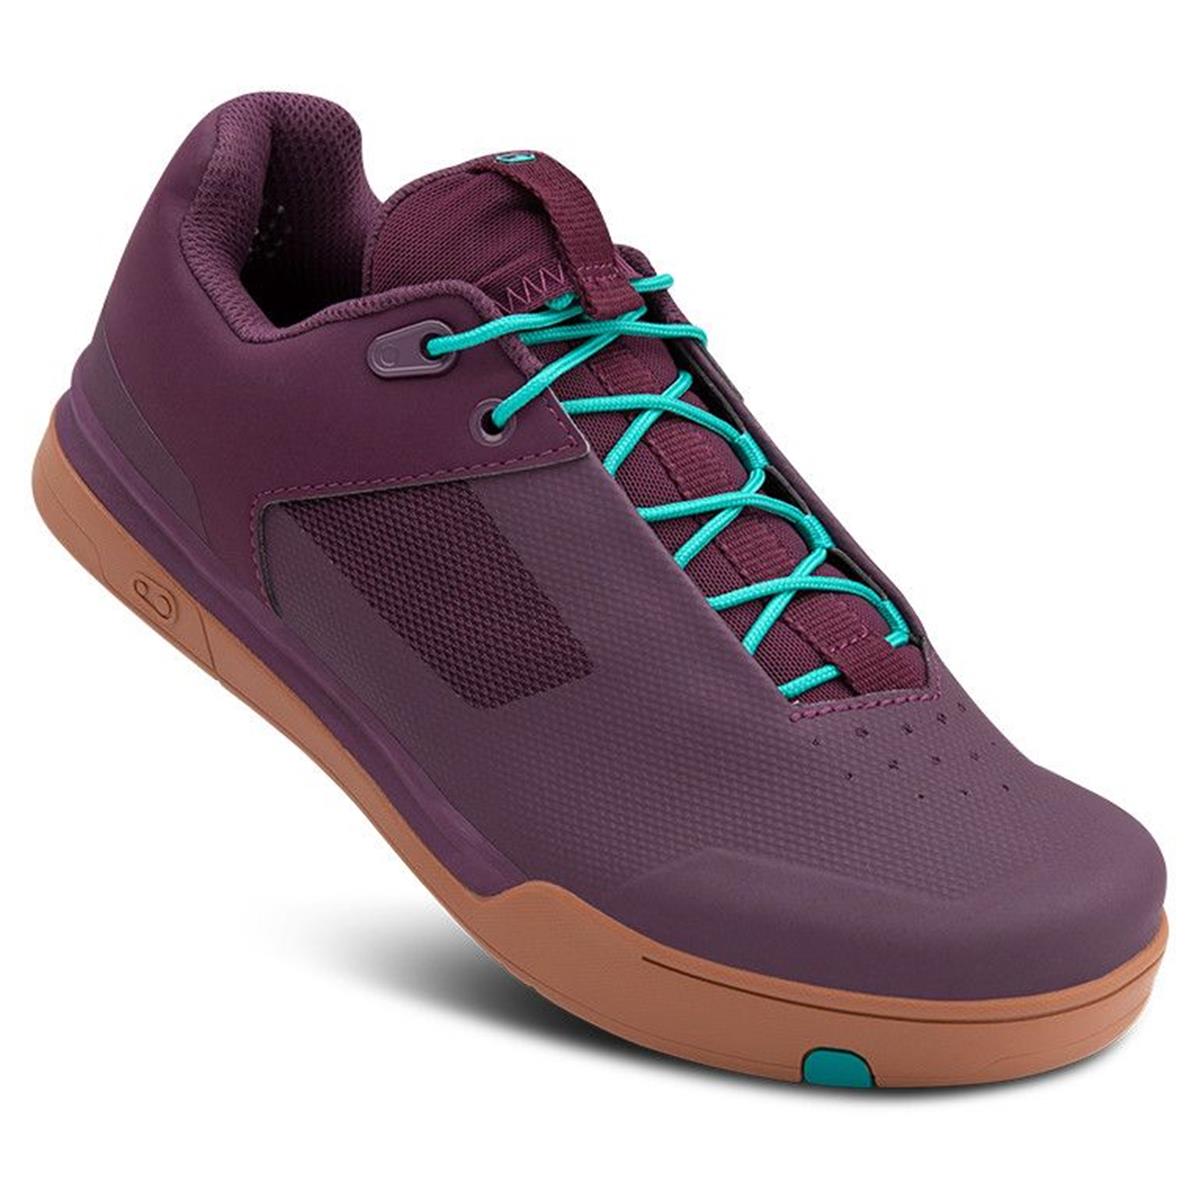 Crankbrothers MTB-Schuhe Mallet Lace Purple Haze/Teal Blue/Gum